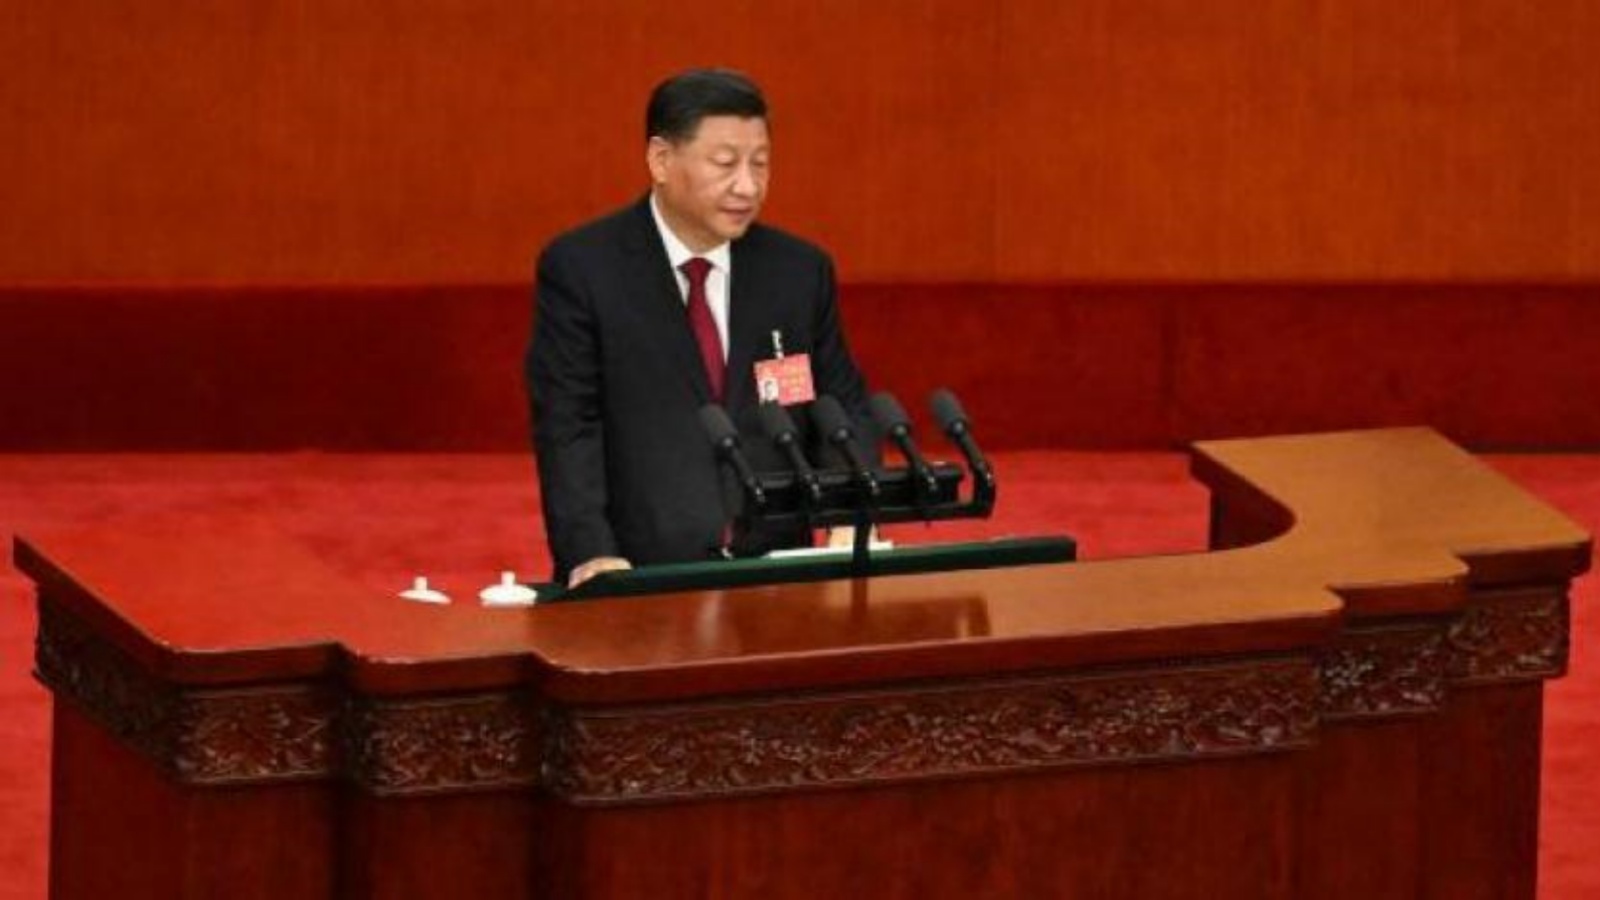 الرئيس الصيني يلقي كلمة خلال افتتاح المؤتمر الذي يتوقع أن يمنحه ولاية ثالثة على رأس السلطة